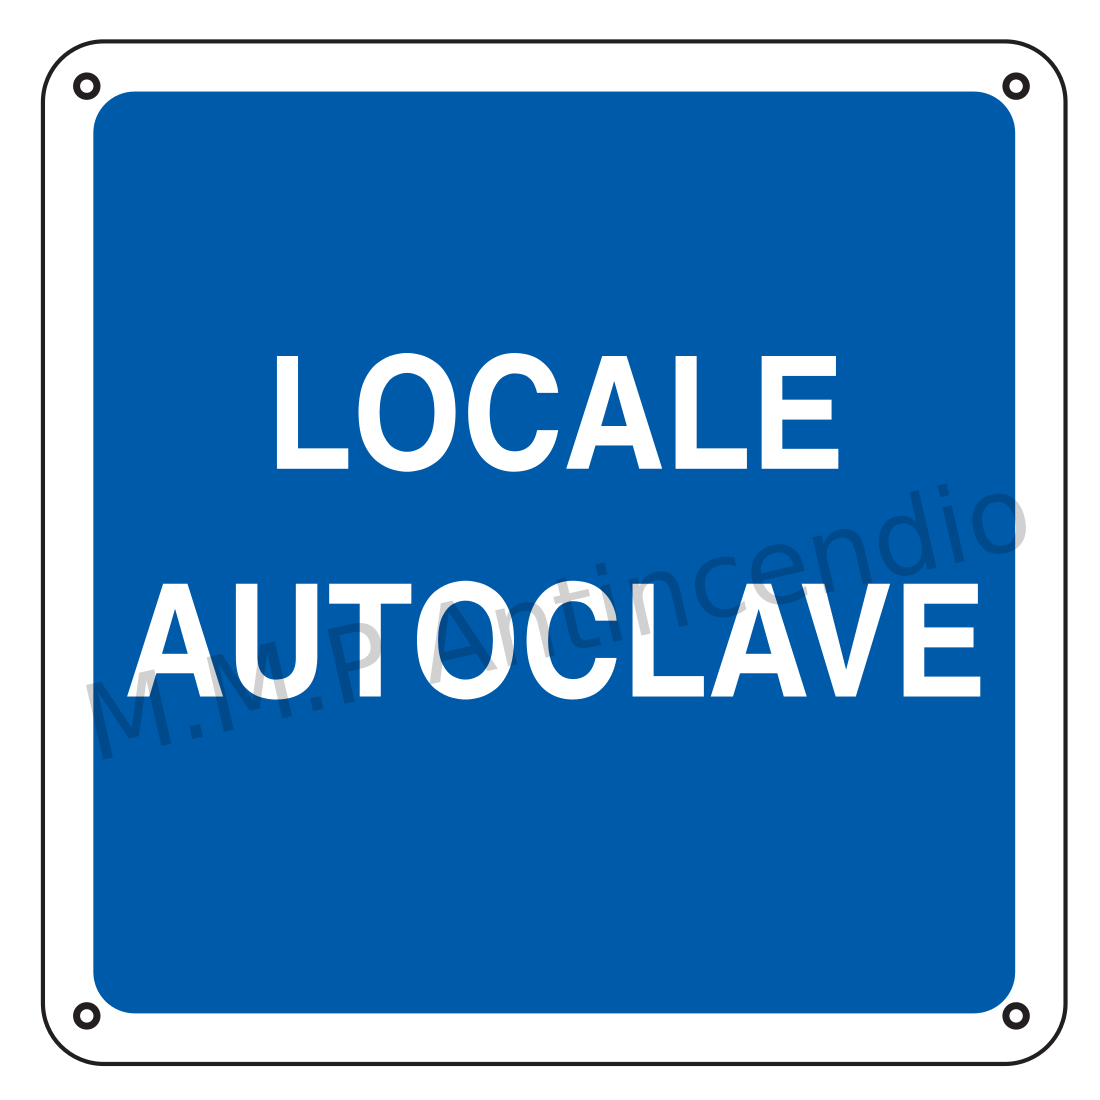 Locale autoclave